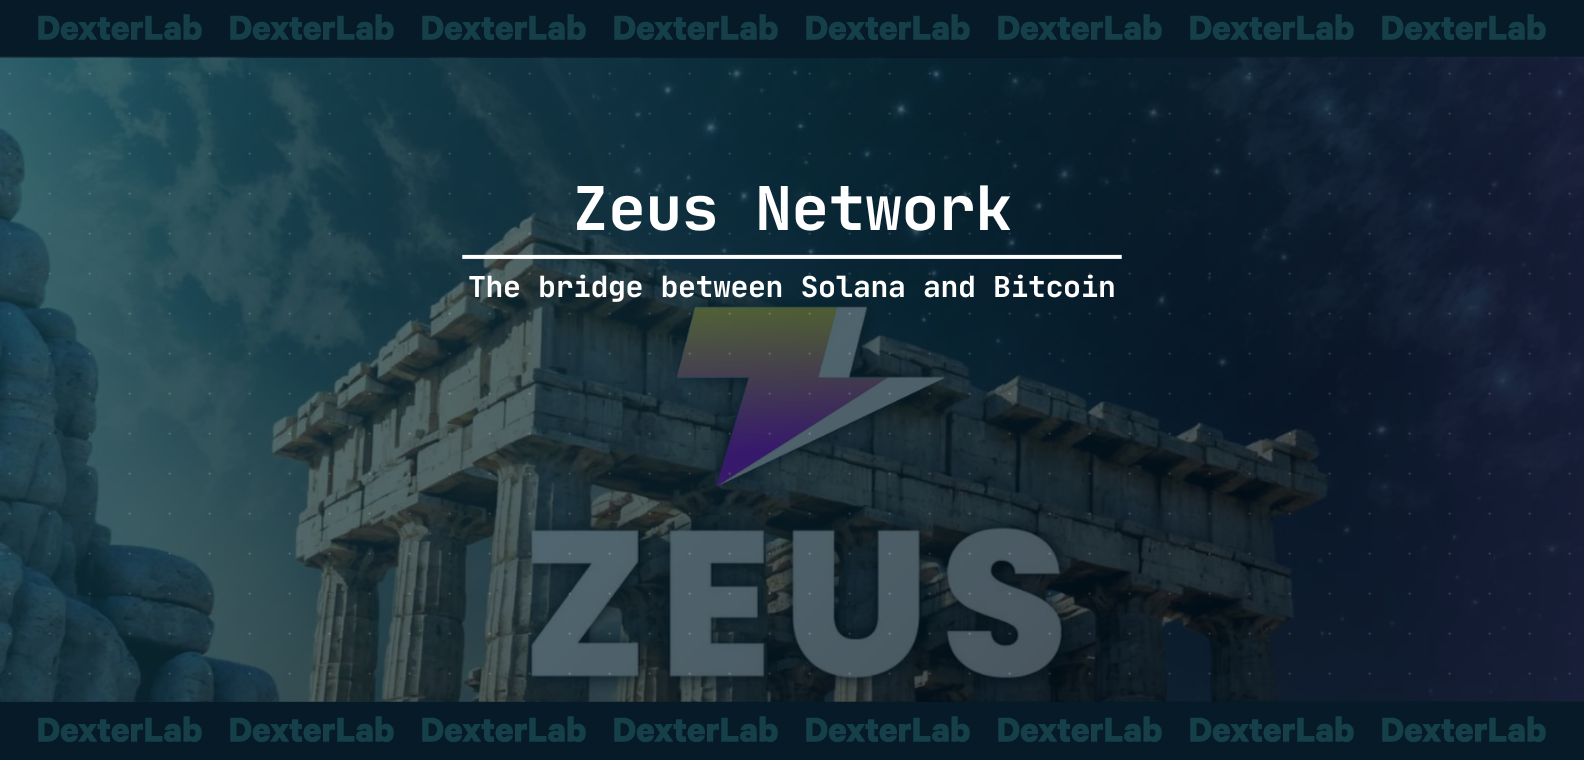 What is Zeus Network?